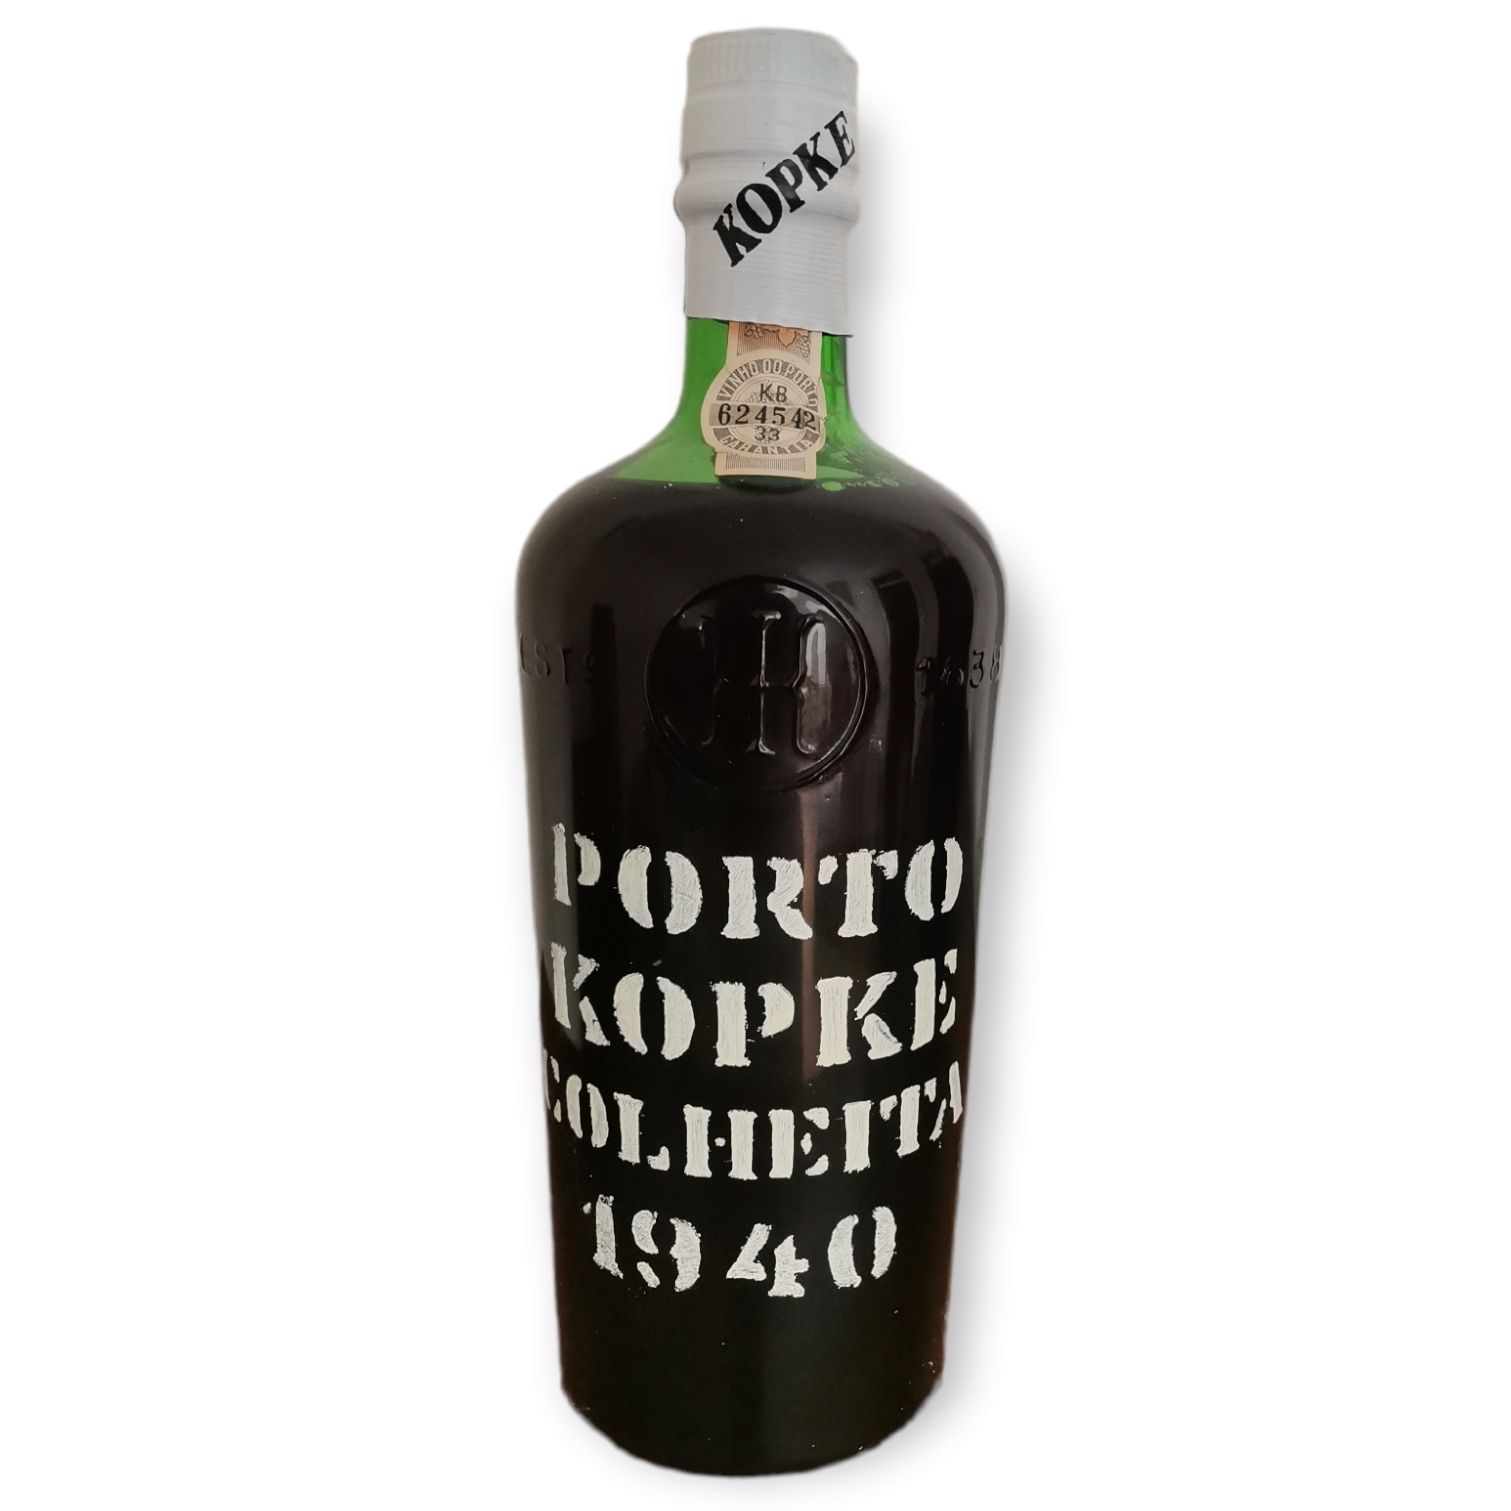 Kopke Botella de vino de Oporto KOPKE. Cosecha de 1940, embotellada en 1982.